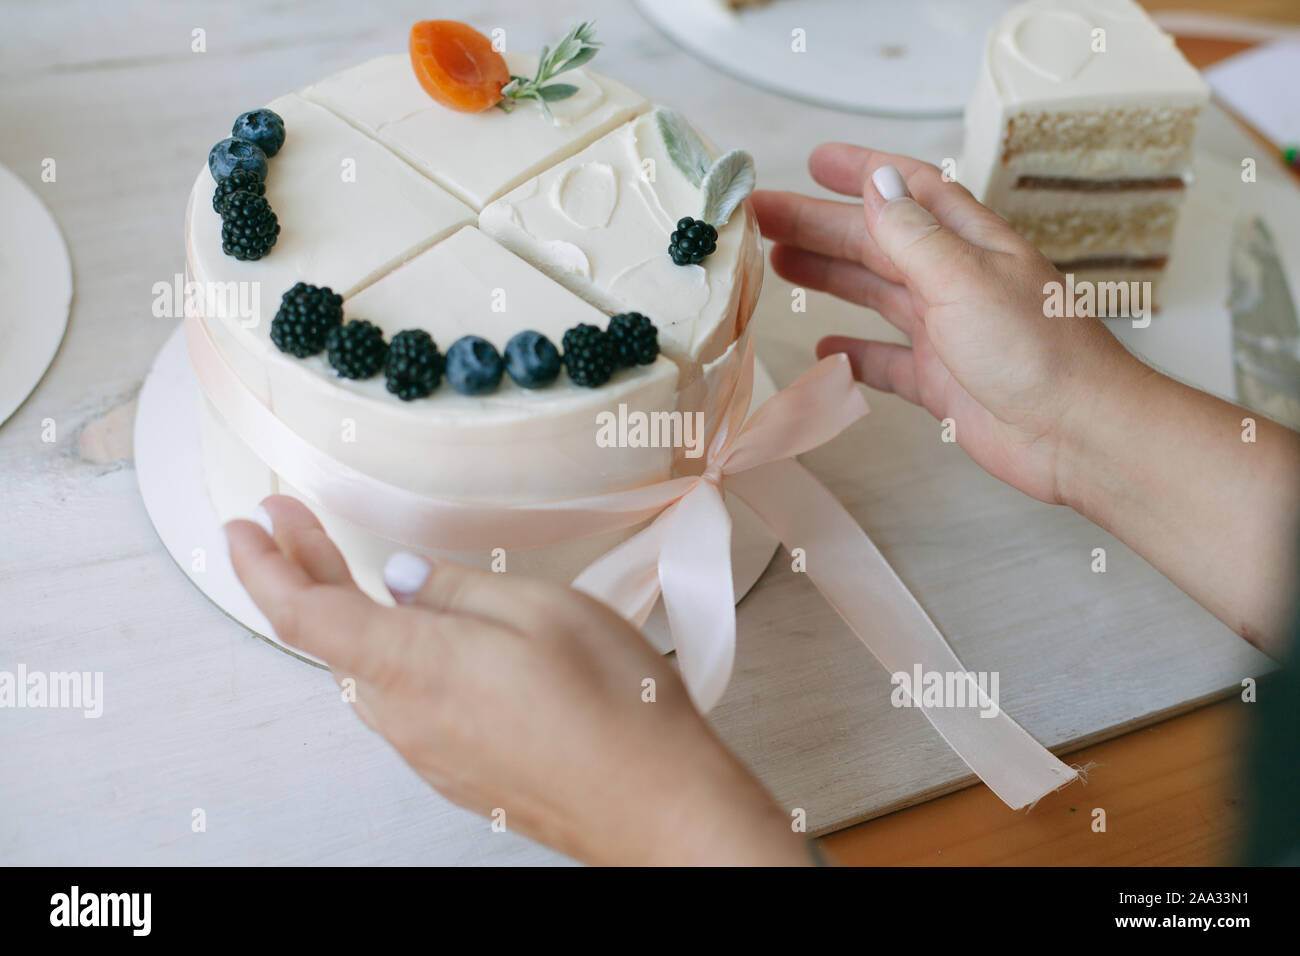 Donna mettendo insieme quattro fette di torta per fare una torta di composto Foto Stock